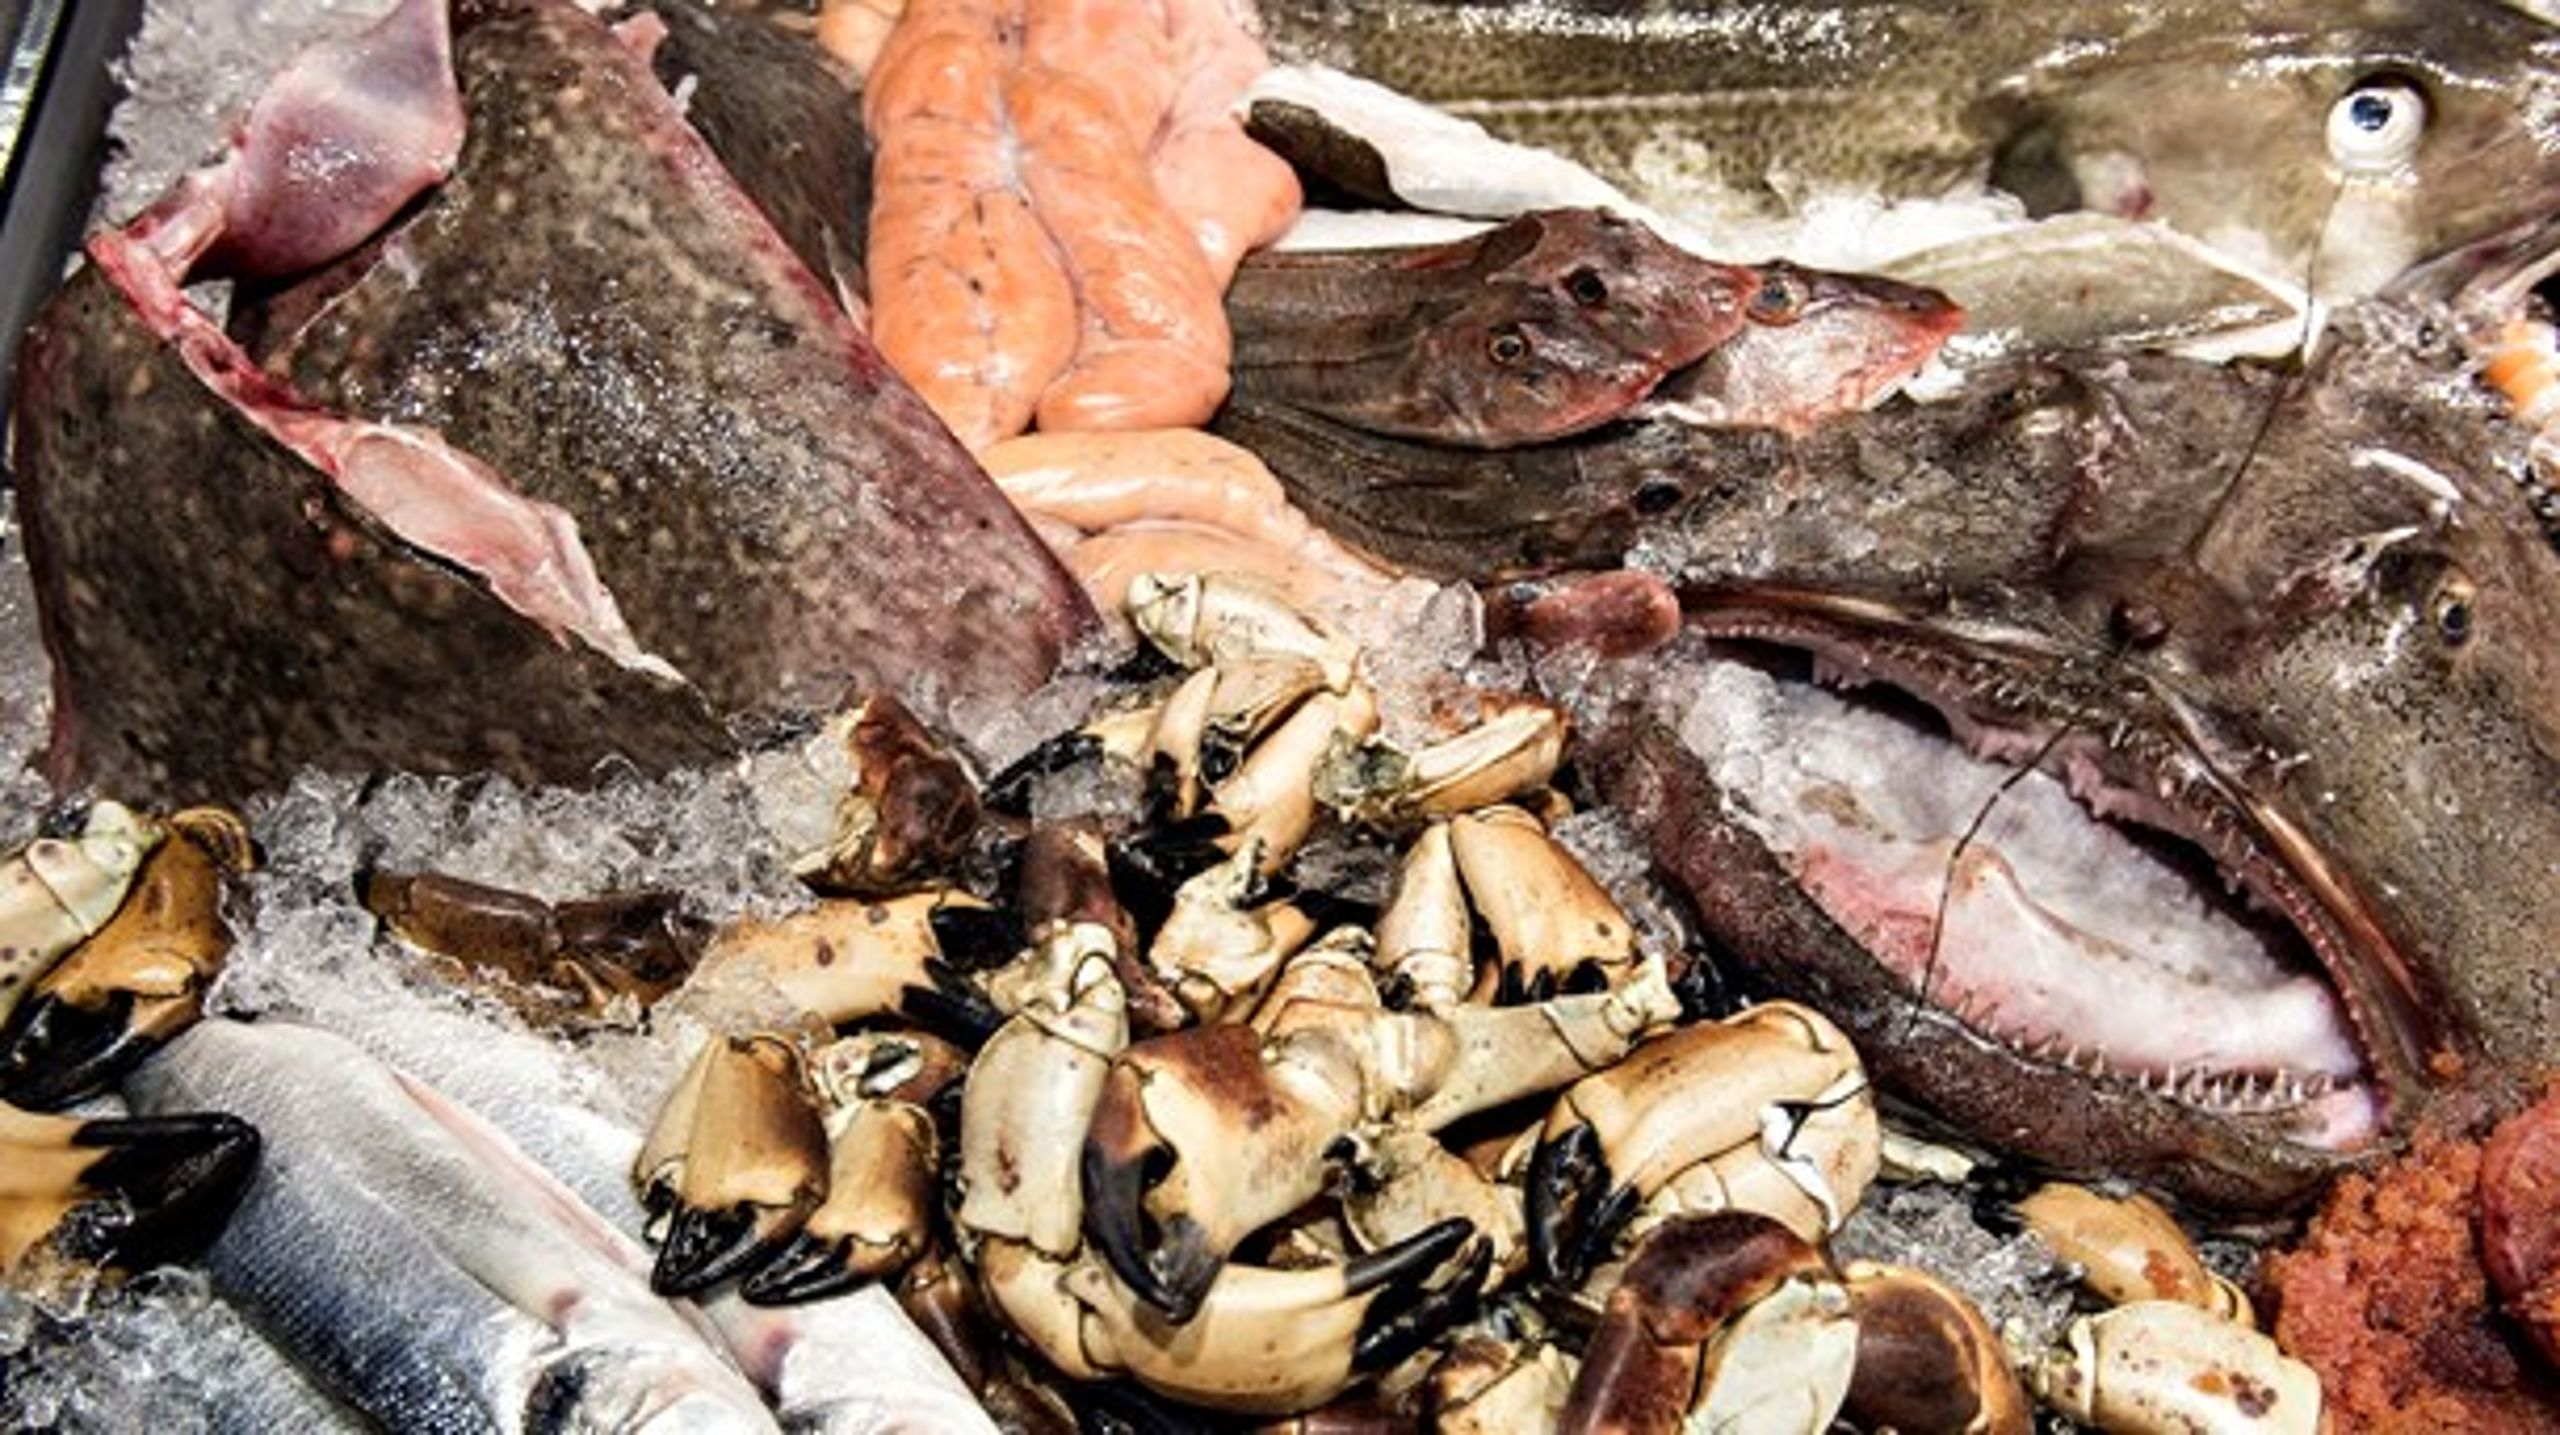 MSC-mærket skal gælde alle fiskere, skriver Danmarks Fiskeriforening i en pressemeddelelse.